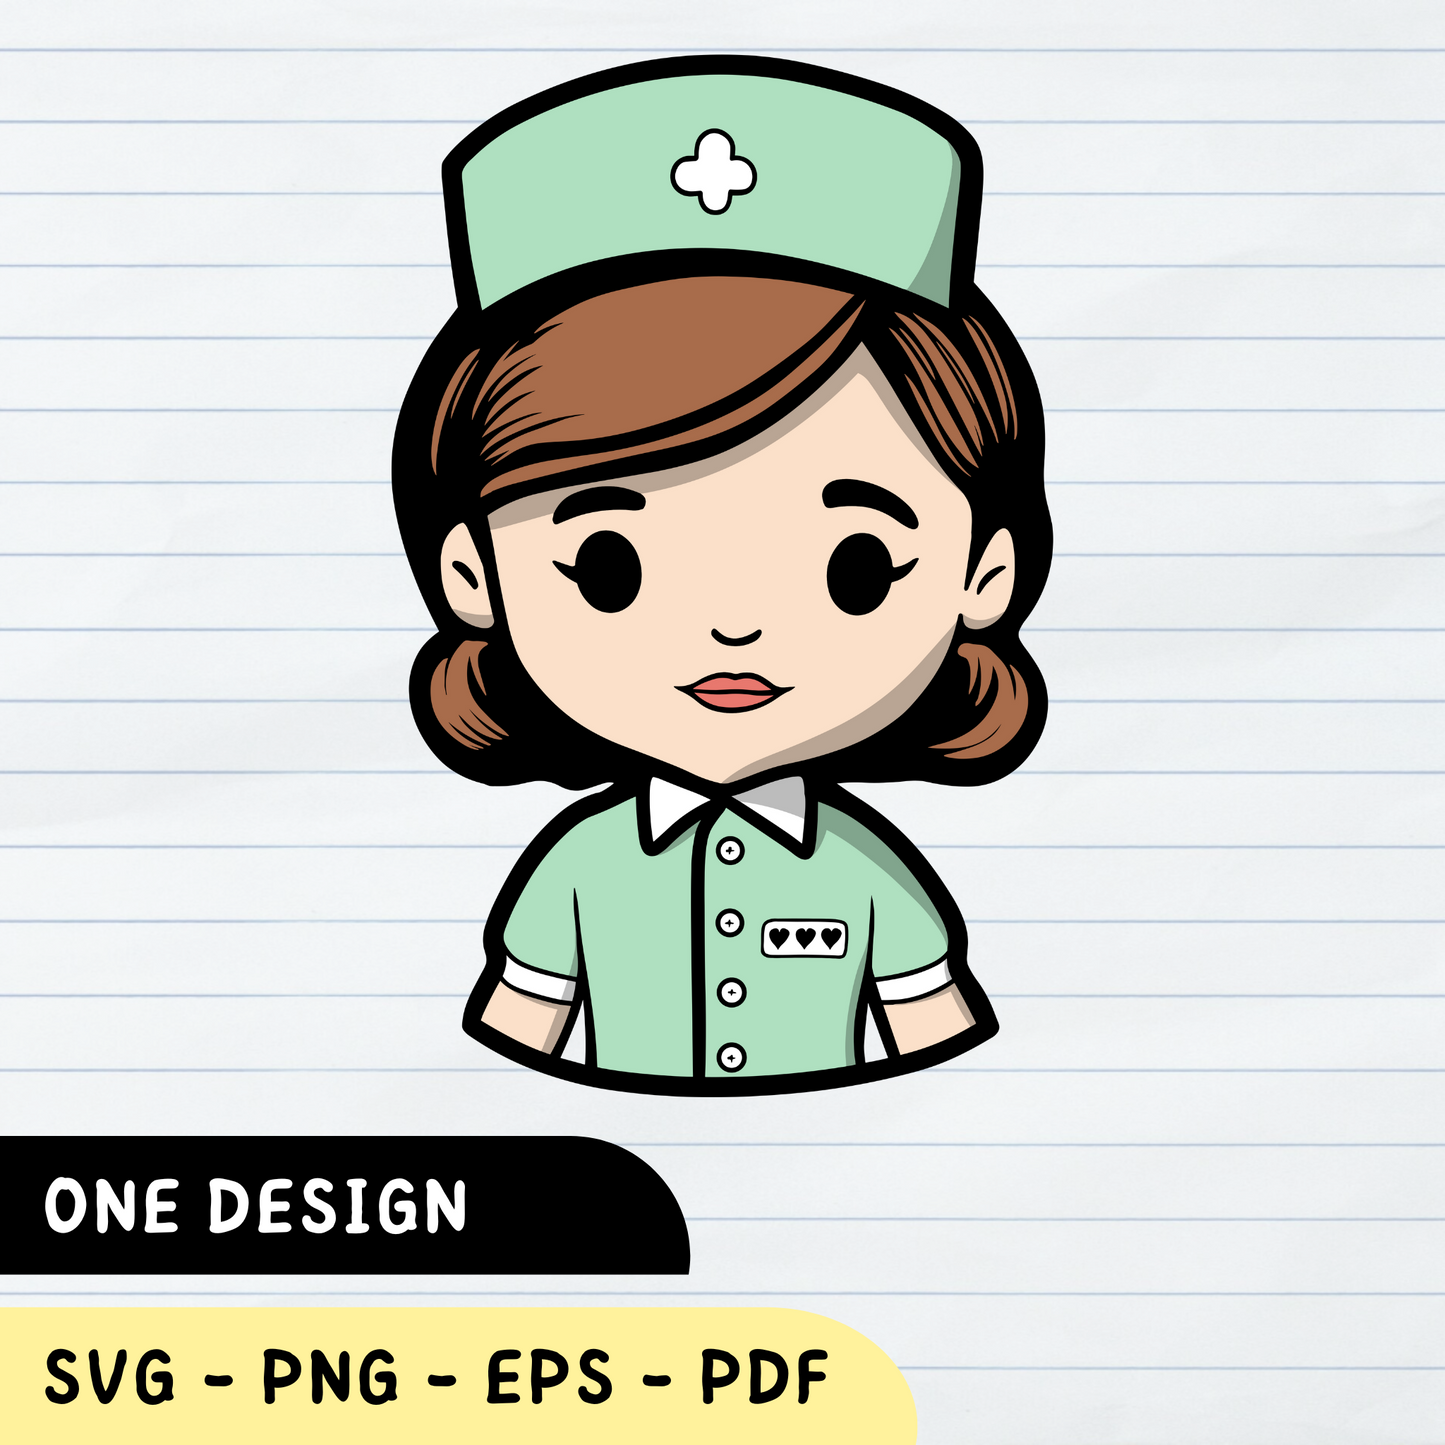 Cute Nurse SVG Design, Cute Nurse, Nurse scrapbooking, Nurse Silhouette, Cute Nurse Vector